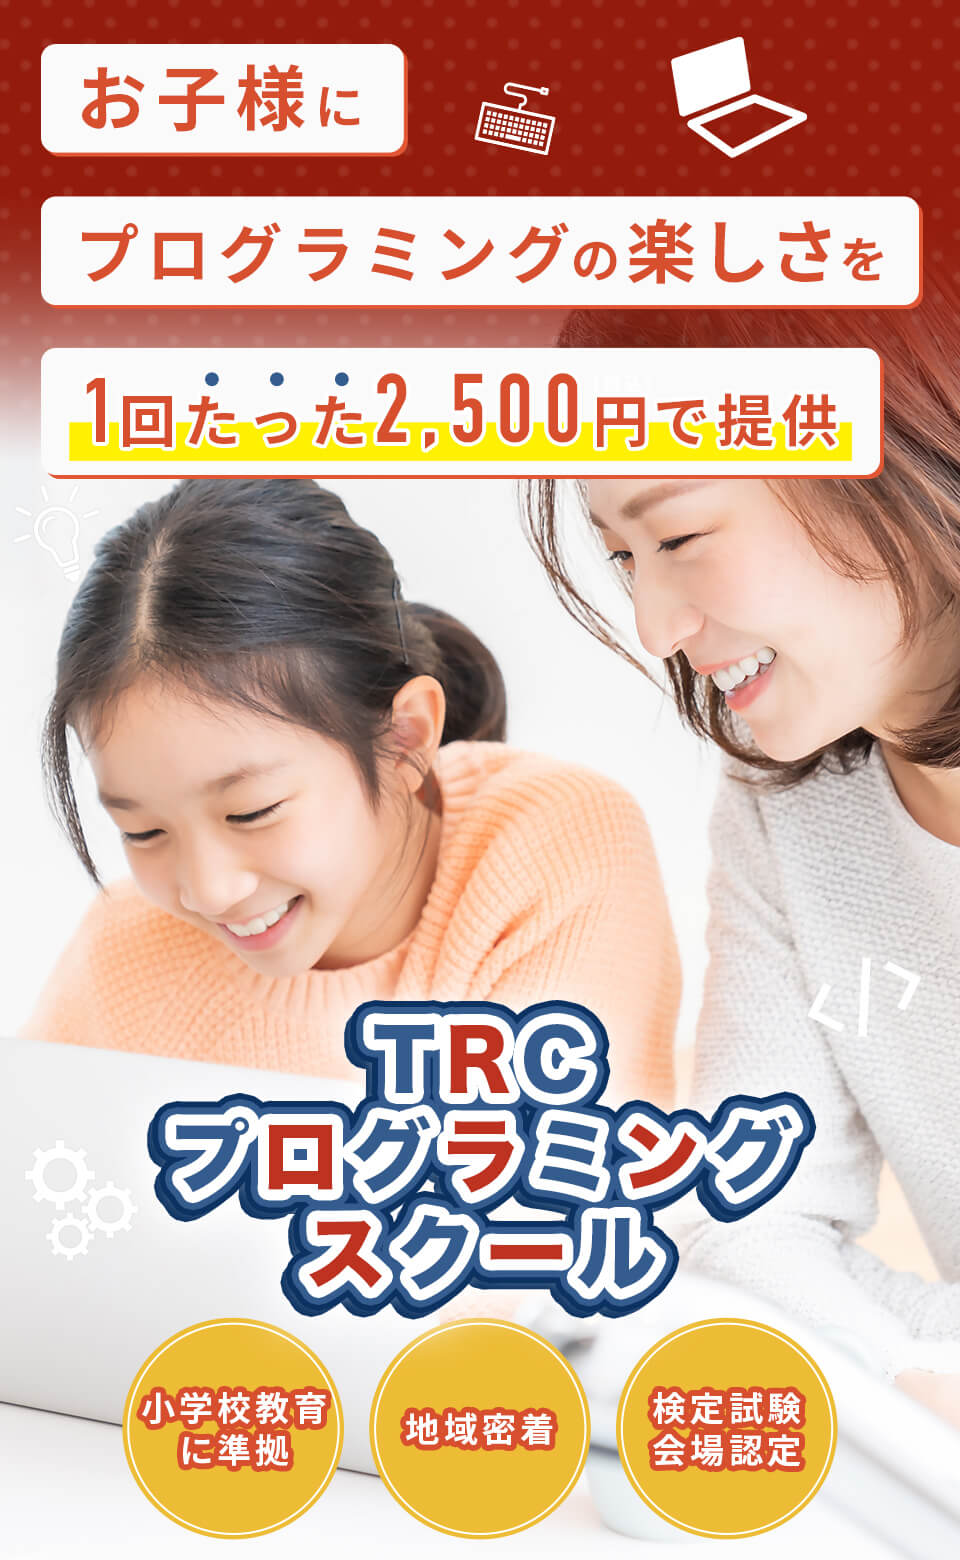 お子さまにプログラミングの楽しさを一回たった2500円で提供。TRCプログラミングスクール。小学校教育に準拠、地域密着、検定試験会場認定